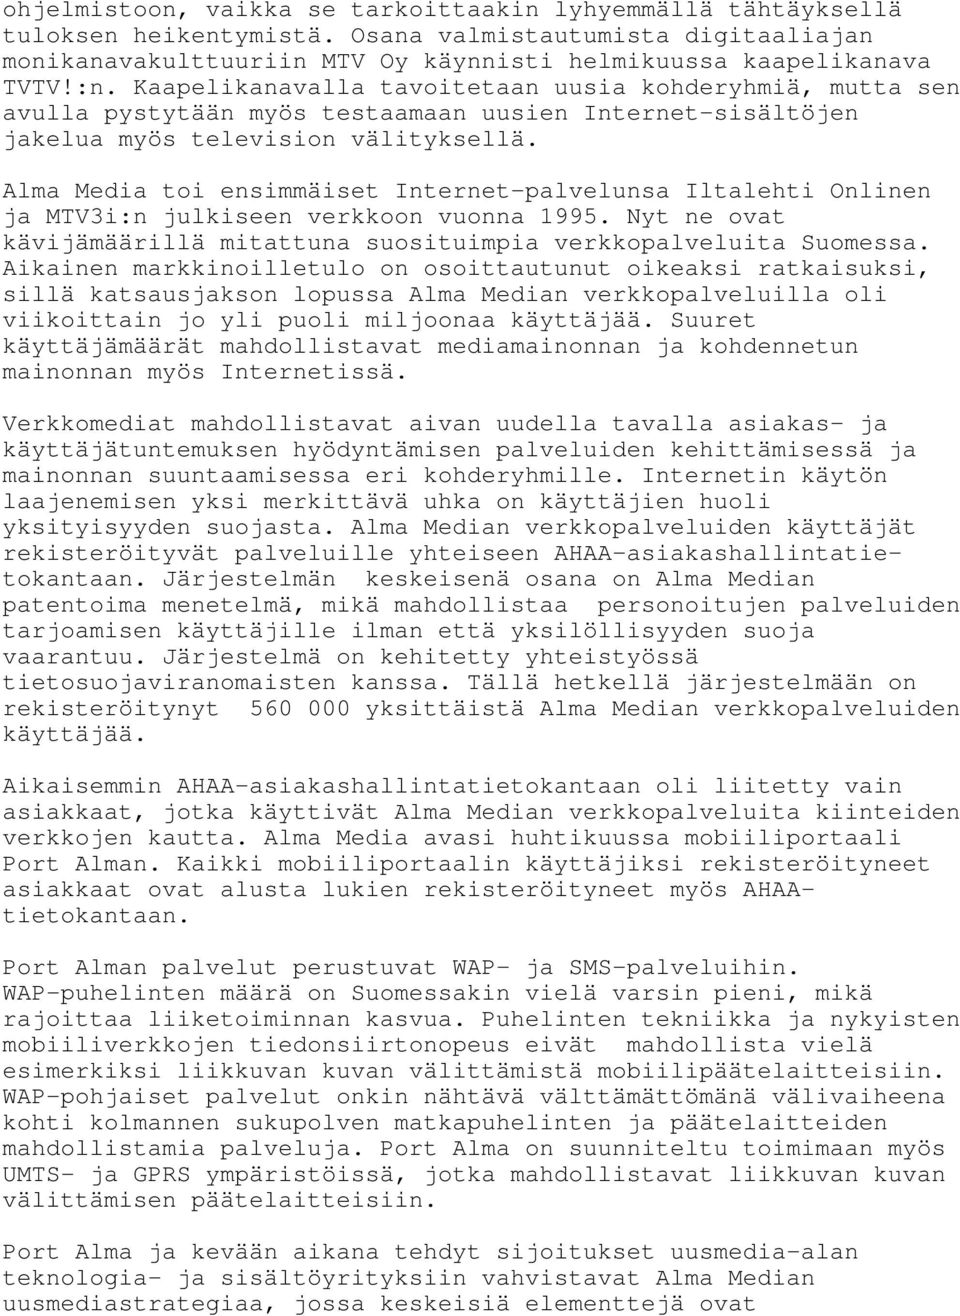 Alma Media toi ensimmäiset Internet-palvelunsa Iltalehti Onlinen ja MTV3i:n julkiseen verkkoon vuonna 1995. Nyt ne ovat kävijämäärillä mitattuna suosituimpia verkkopalveluita Suomessa.